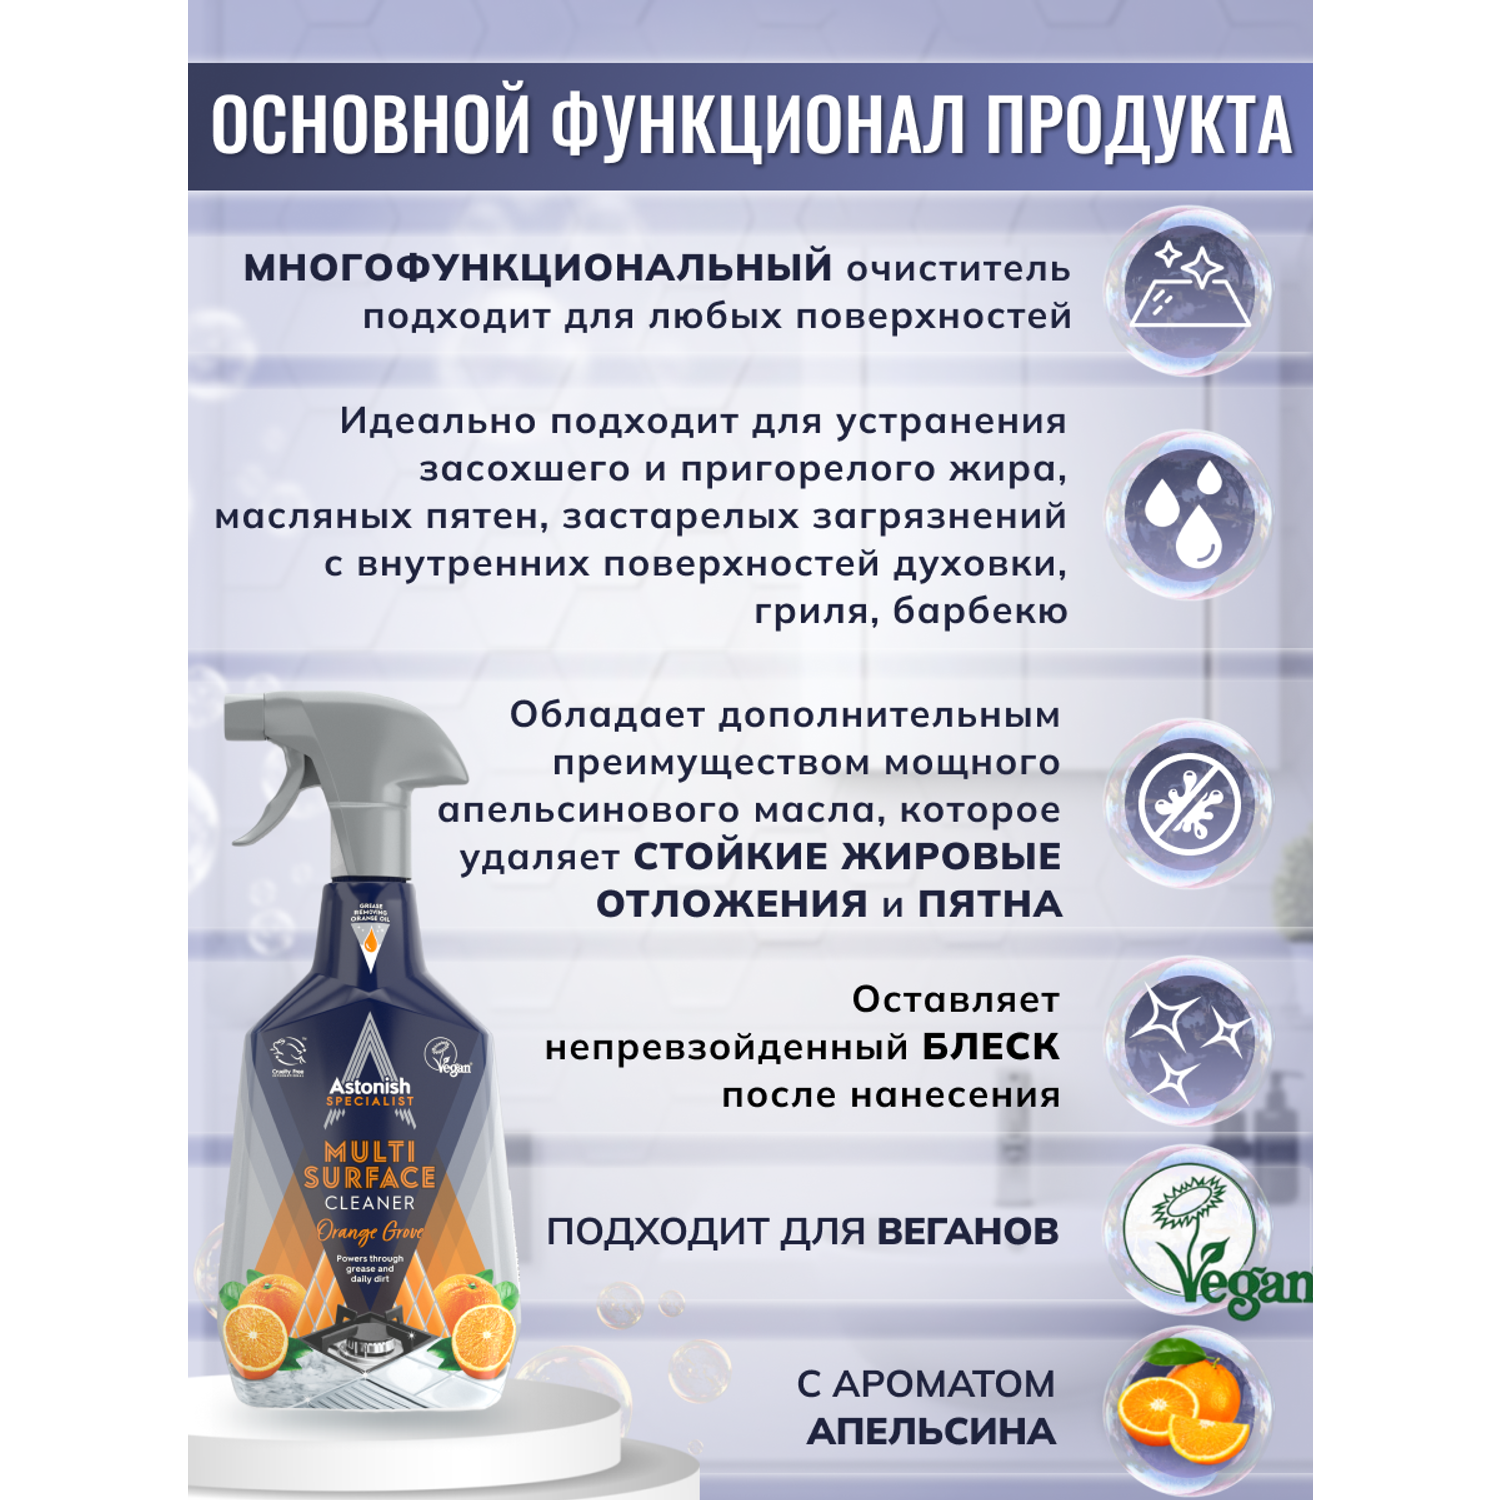 Многофункциональный очиститель Astonish На основе натурального апельсинового масла Specialist Multi-Surface Cleaner Orange Grove - фото 3